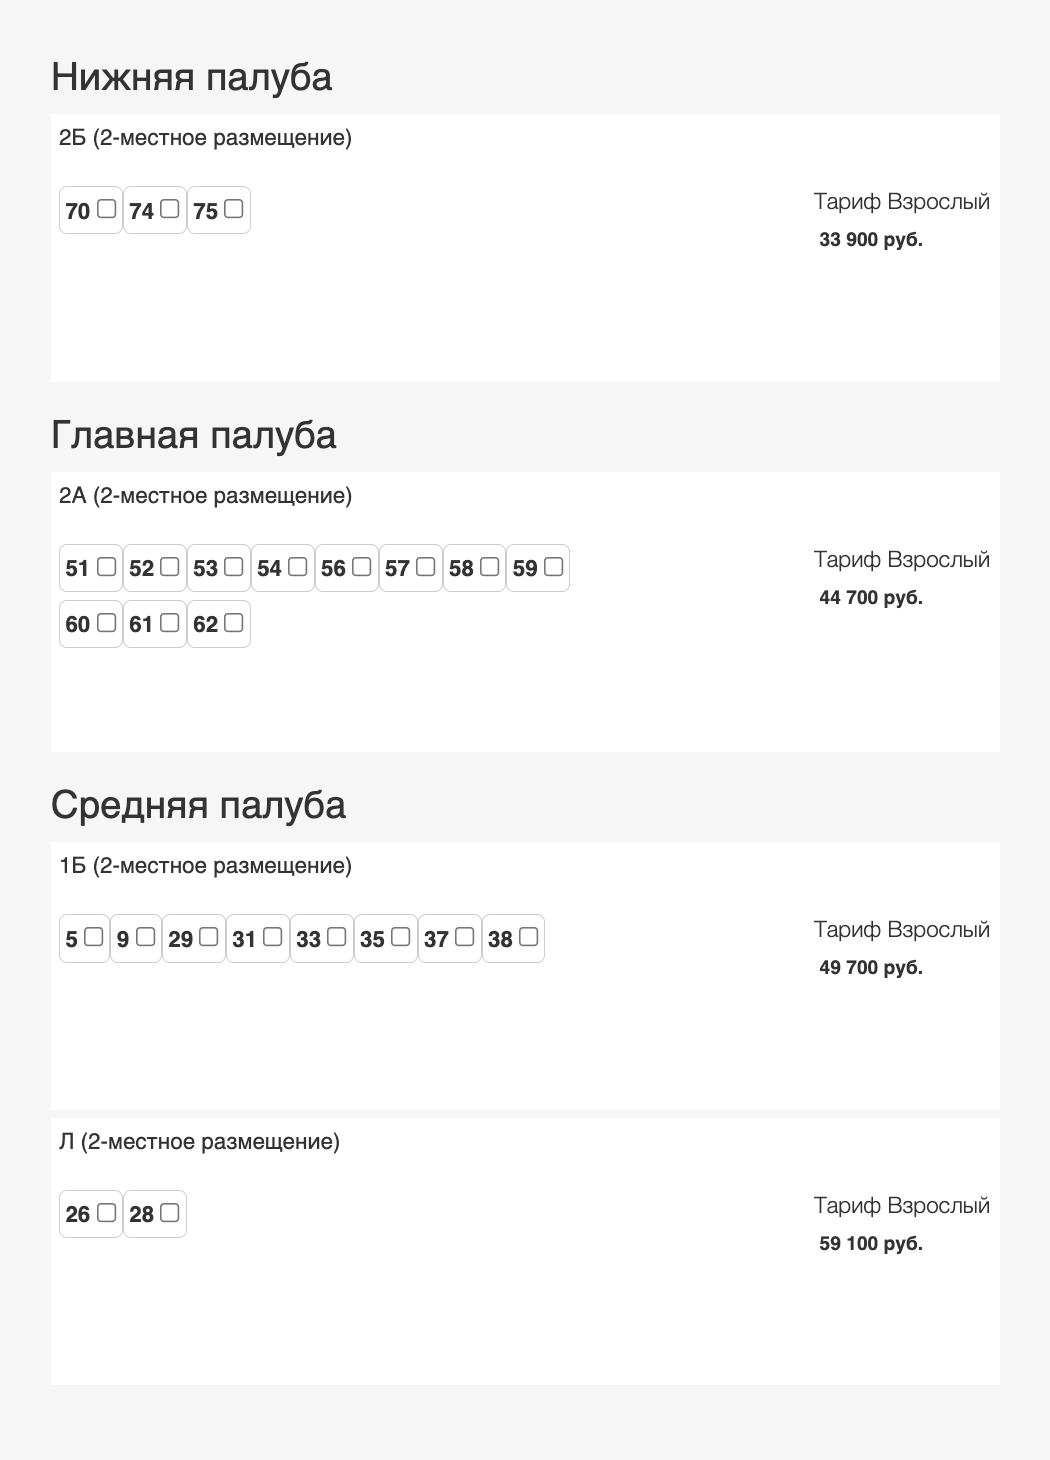 Таблица цен на круиз из Москвы в Константиново. Источник:&nbsp;«Речные путешествия»